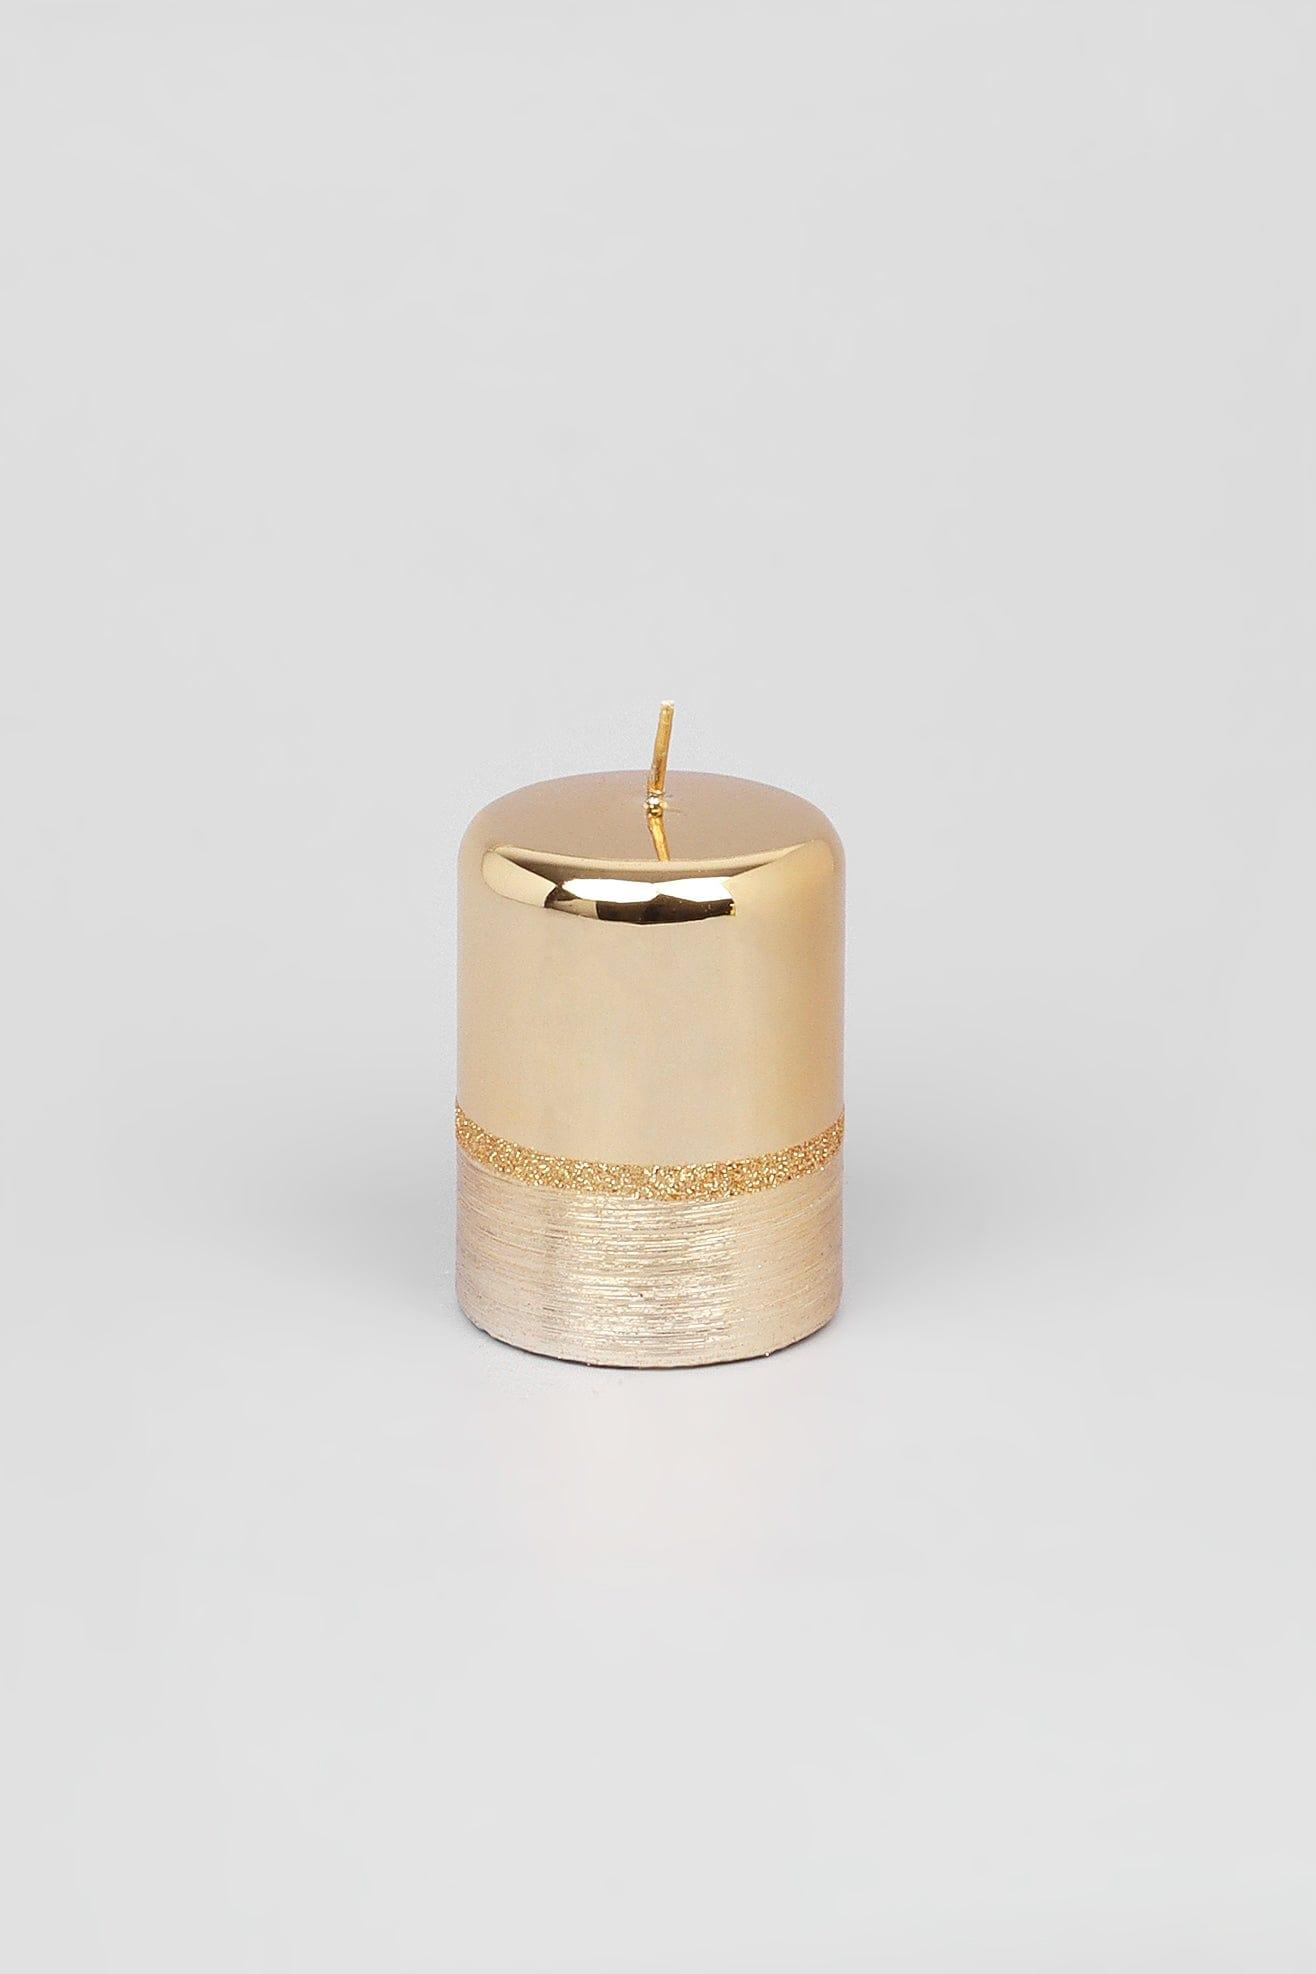 G Decor Candles Gold / Small pilar Gold Glitter Glass Effect Reflecting Plain Gloss Pillar Candles